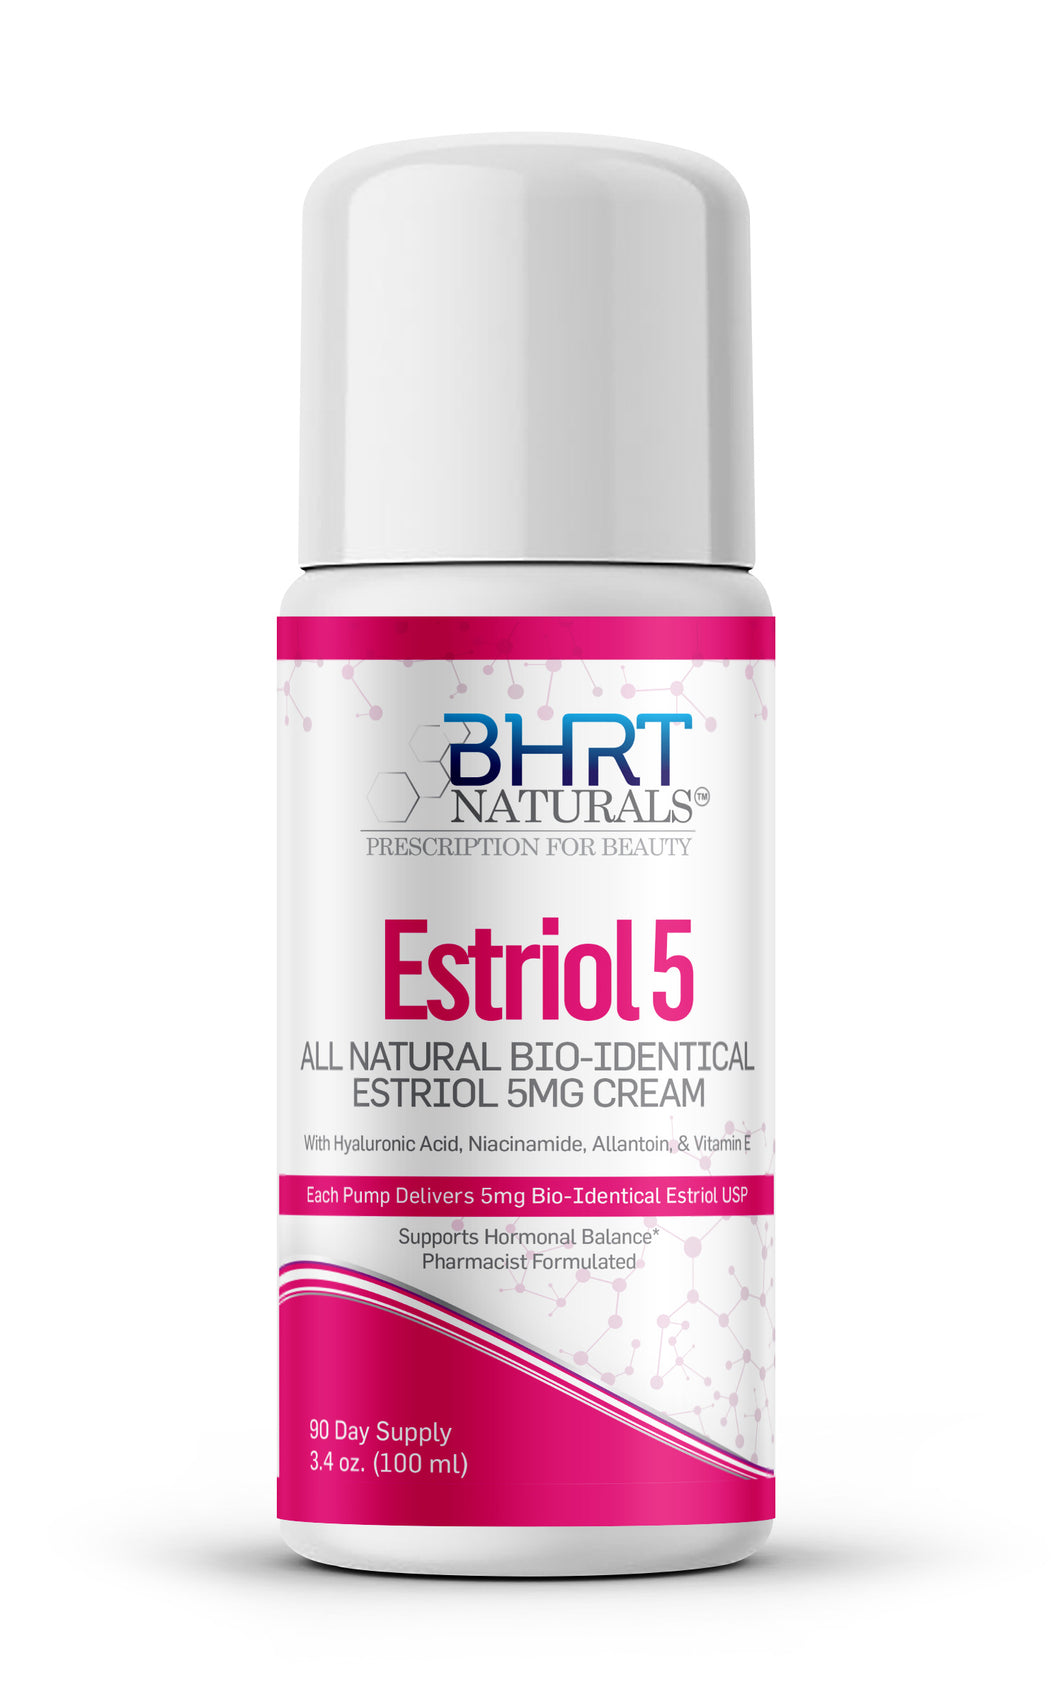 All-Natural Estriol Cream 5mg Bioidentical